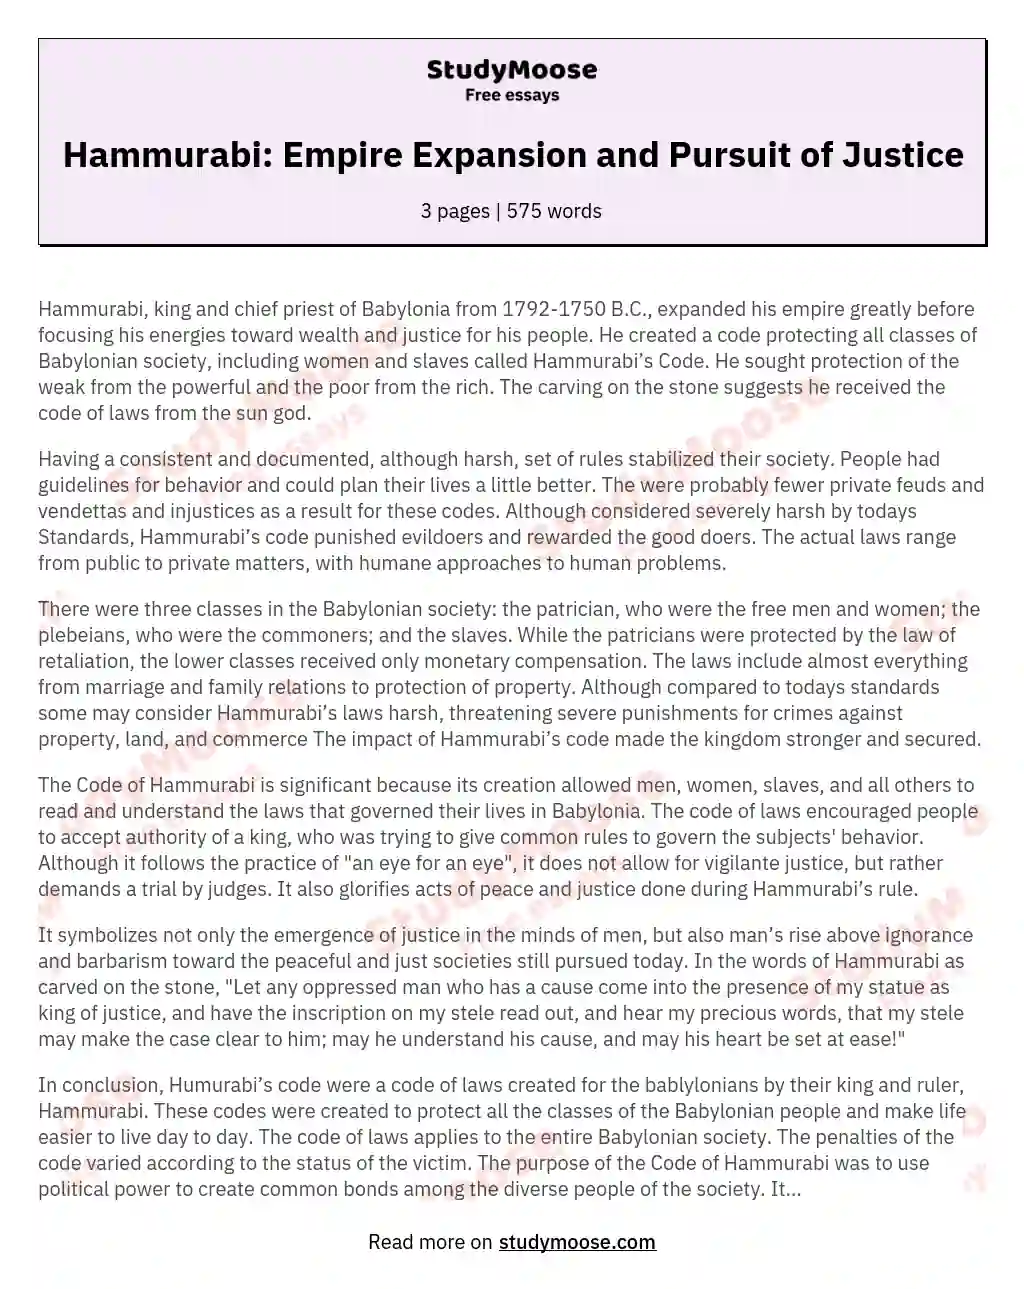 Hammurabi: Empire Expansion and Pursuit of Justice essay